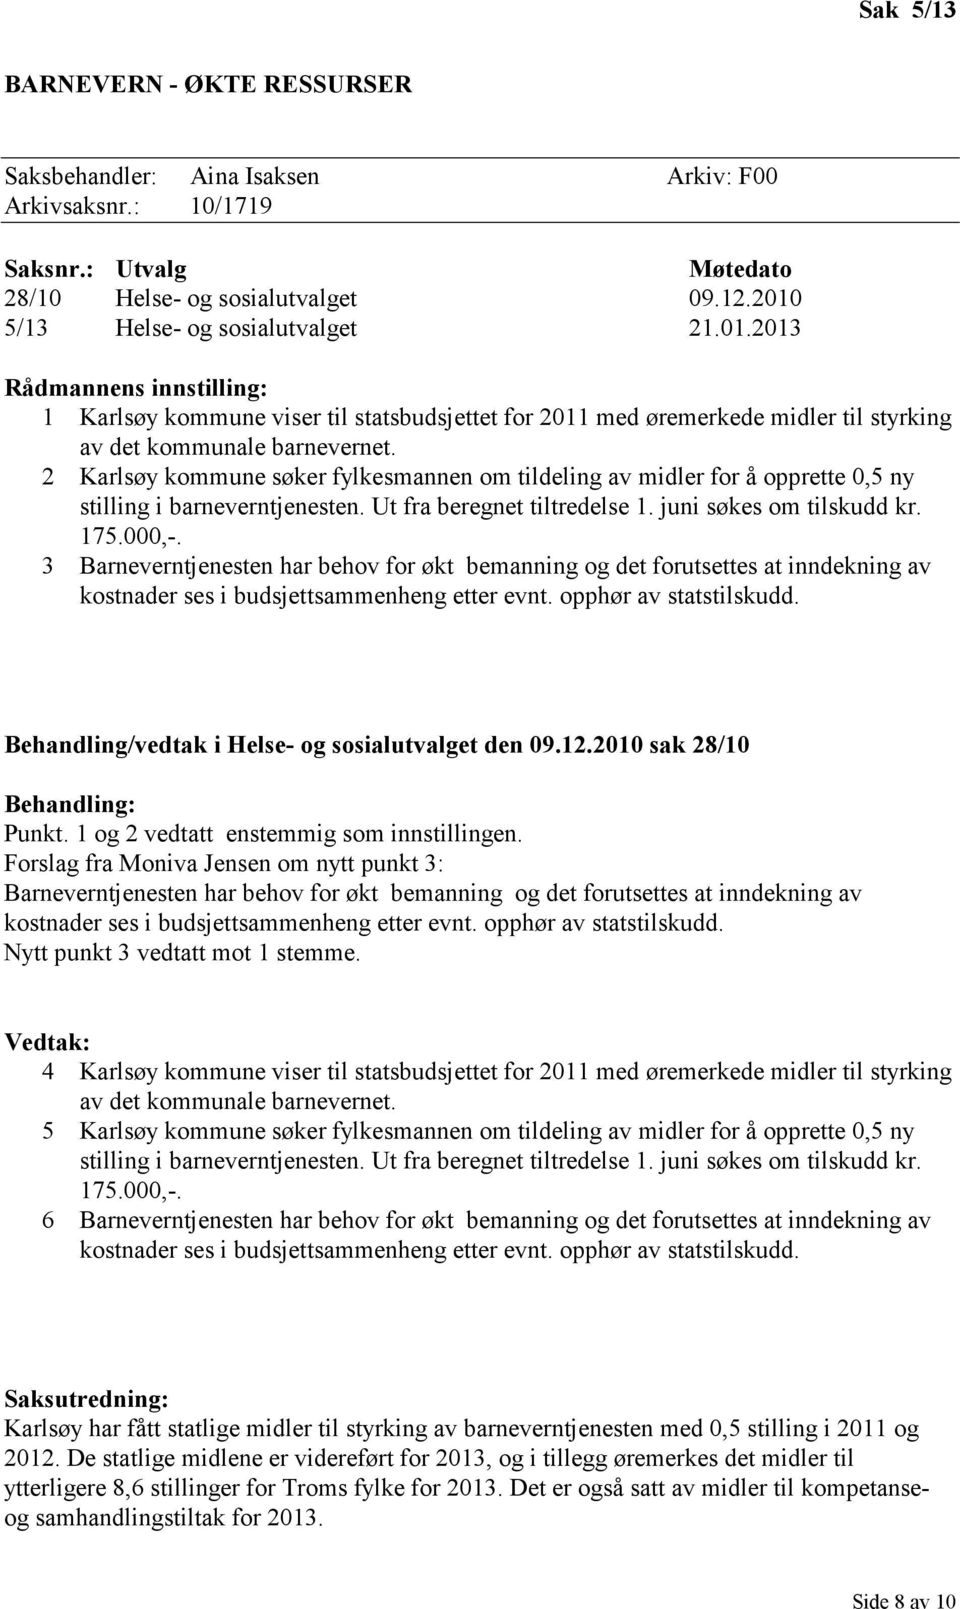 2 Karlsøy kommune søker fylkesmannen om tildeling av midler for å opprette 0,5 ny stilling i barneverntjenesten. Ut fra beregnet tiltredelse 1. juni søkes om tilskudd kr. 175.000,-.